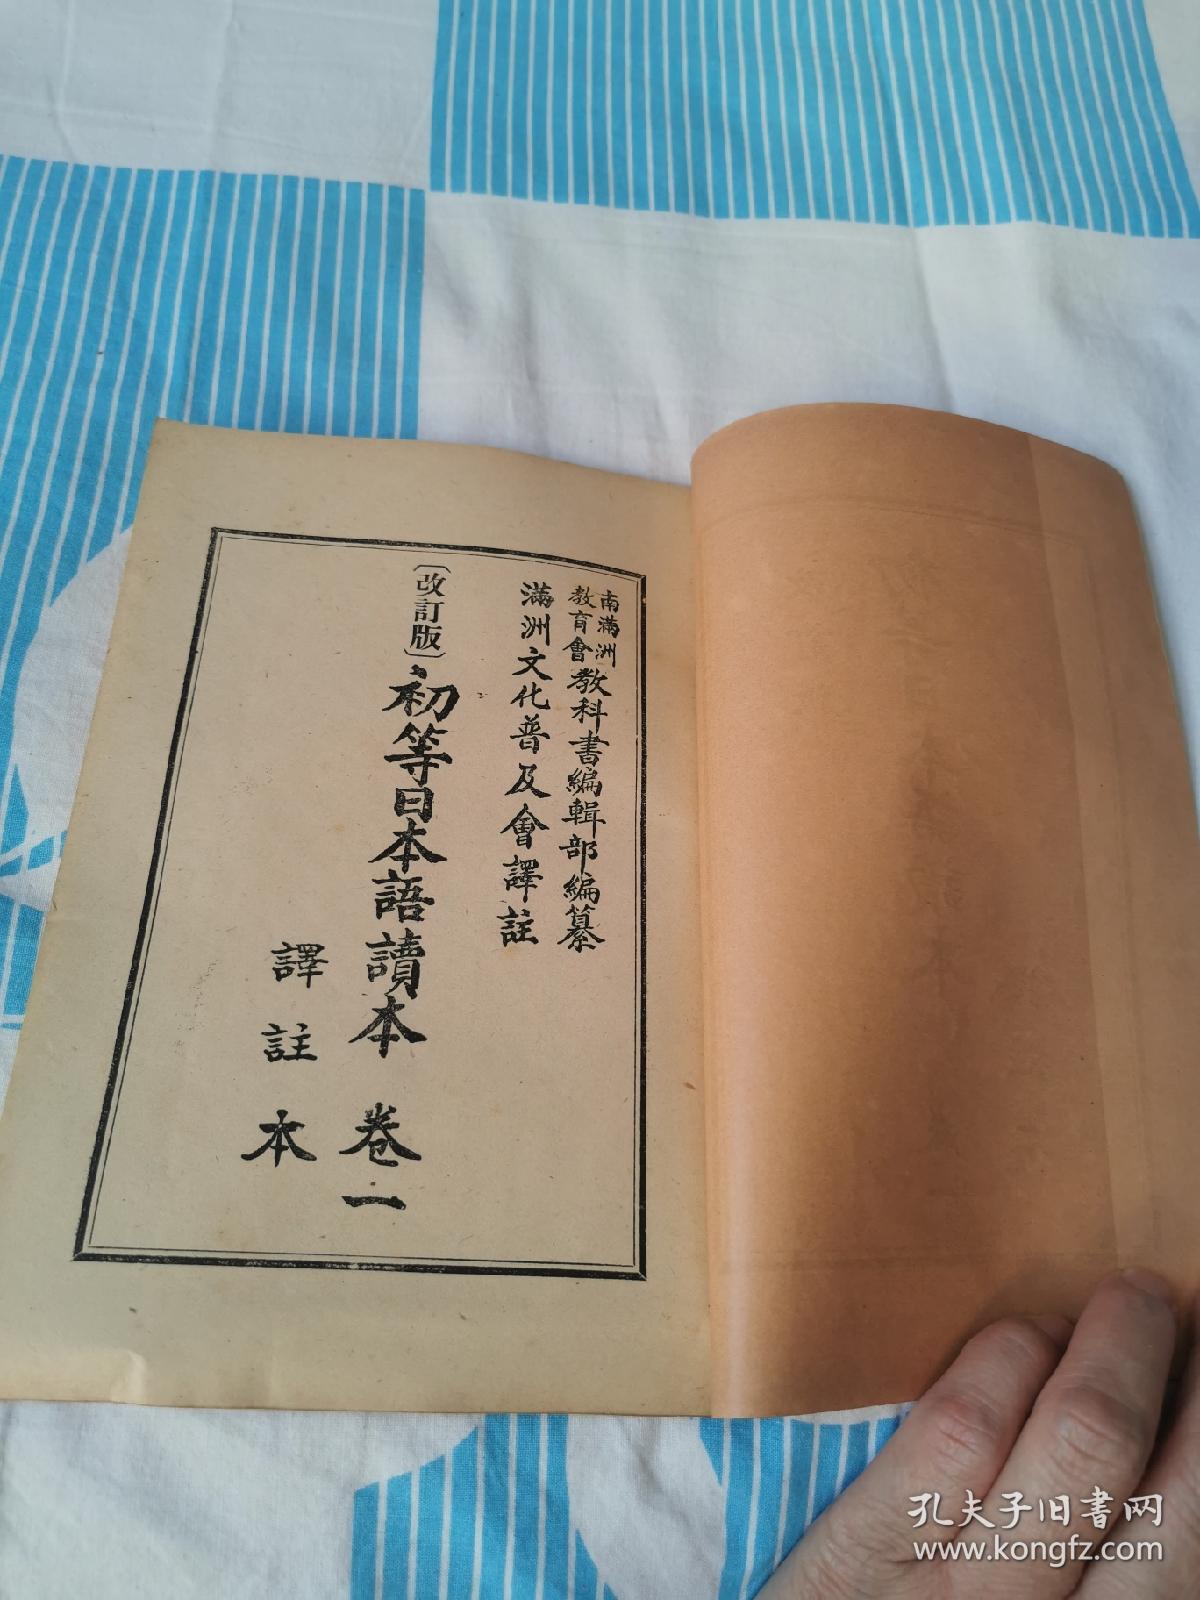 初等日本语读本（全四卷）改订版译注本（存厅4-4）